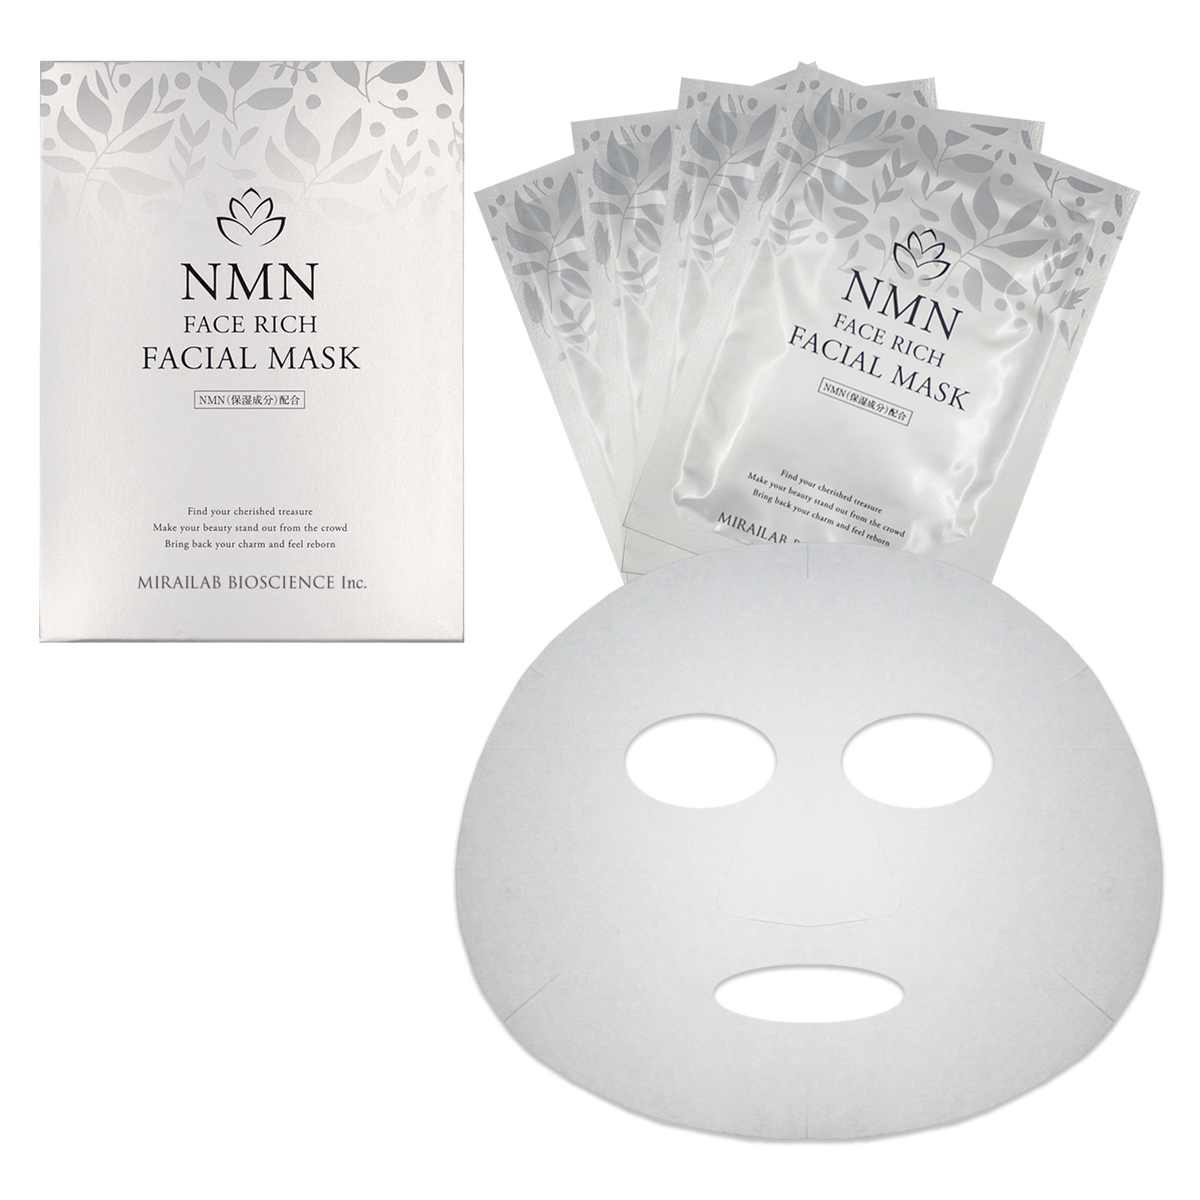 NMNを配合した化粧品ブランド 期間限定キャンペーン ミライダ より ミライダカラ FACE フェイシャルマスク SALE 66%OFF MASK FACIAL RICH を新発売